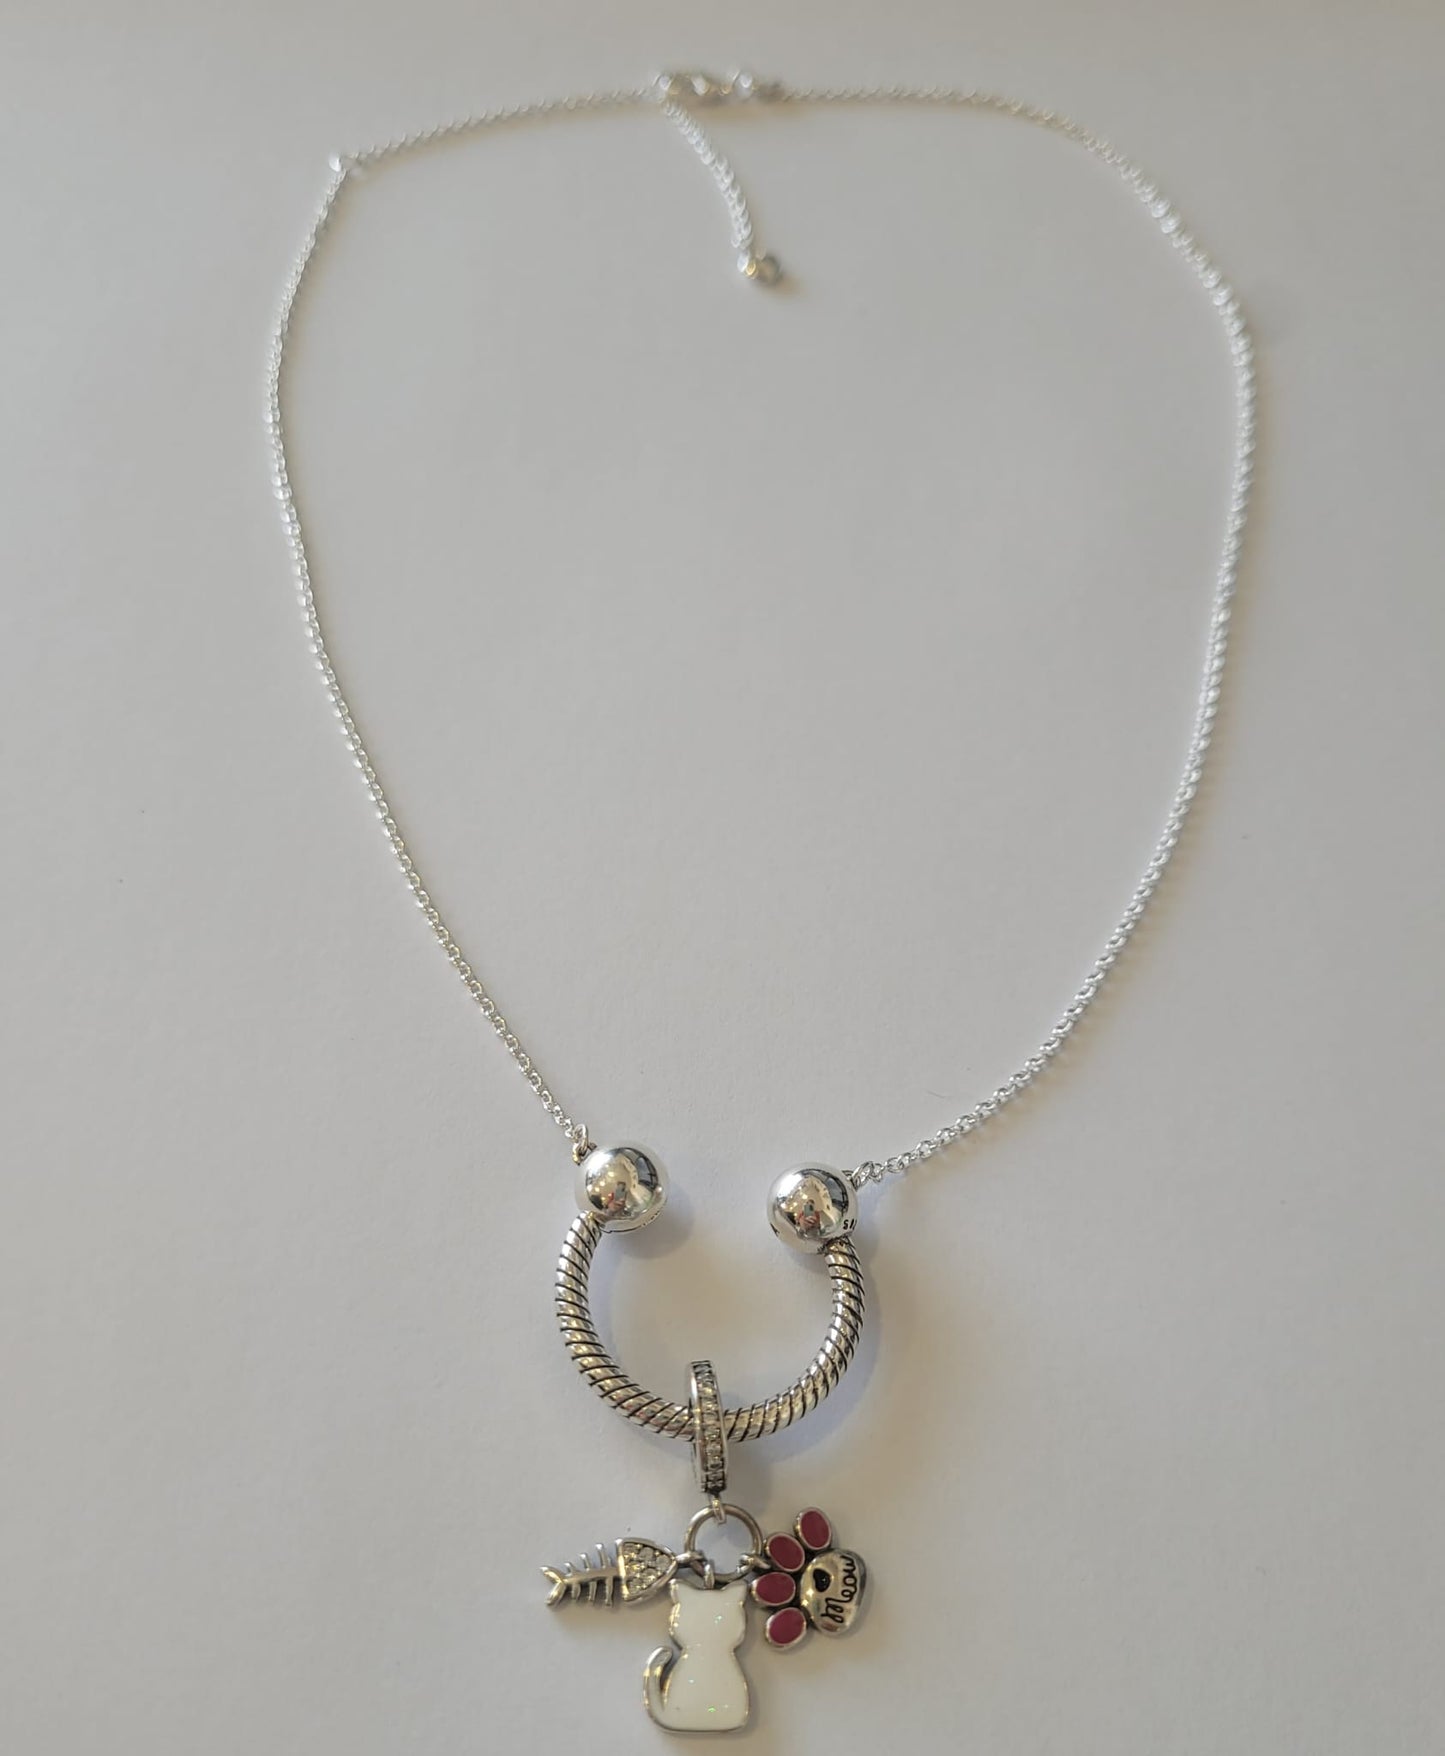 Cadena de plata de ley tipo pandora con colgante semi círculo y abalorio de gato, huella y pez